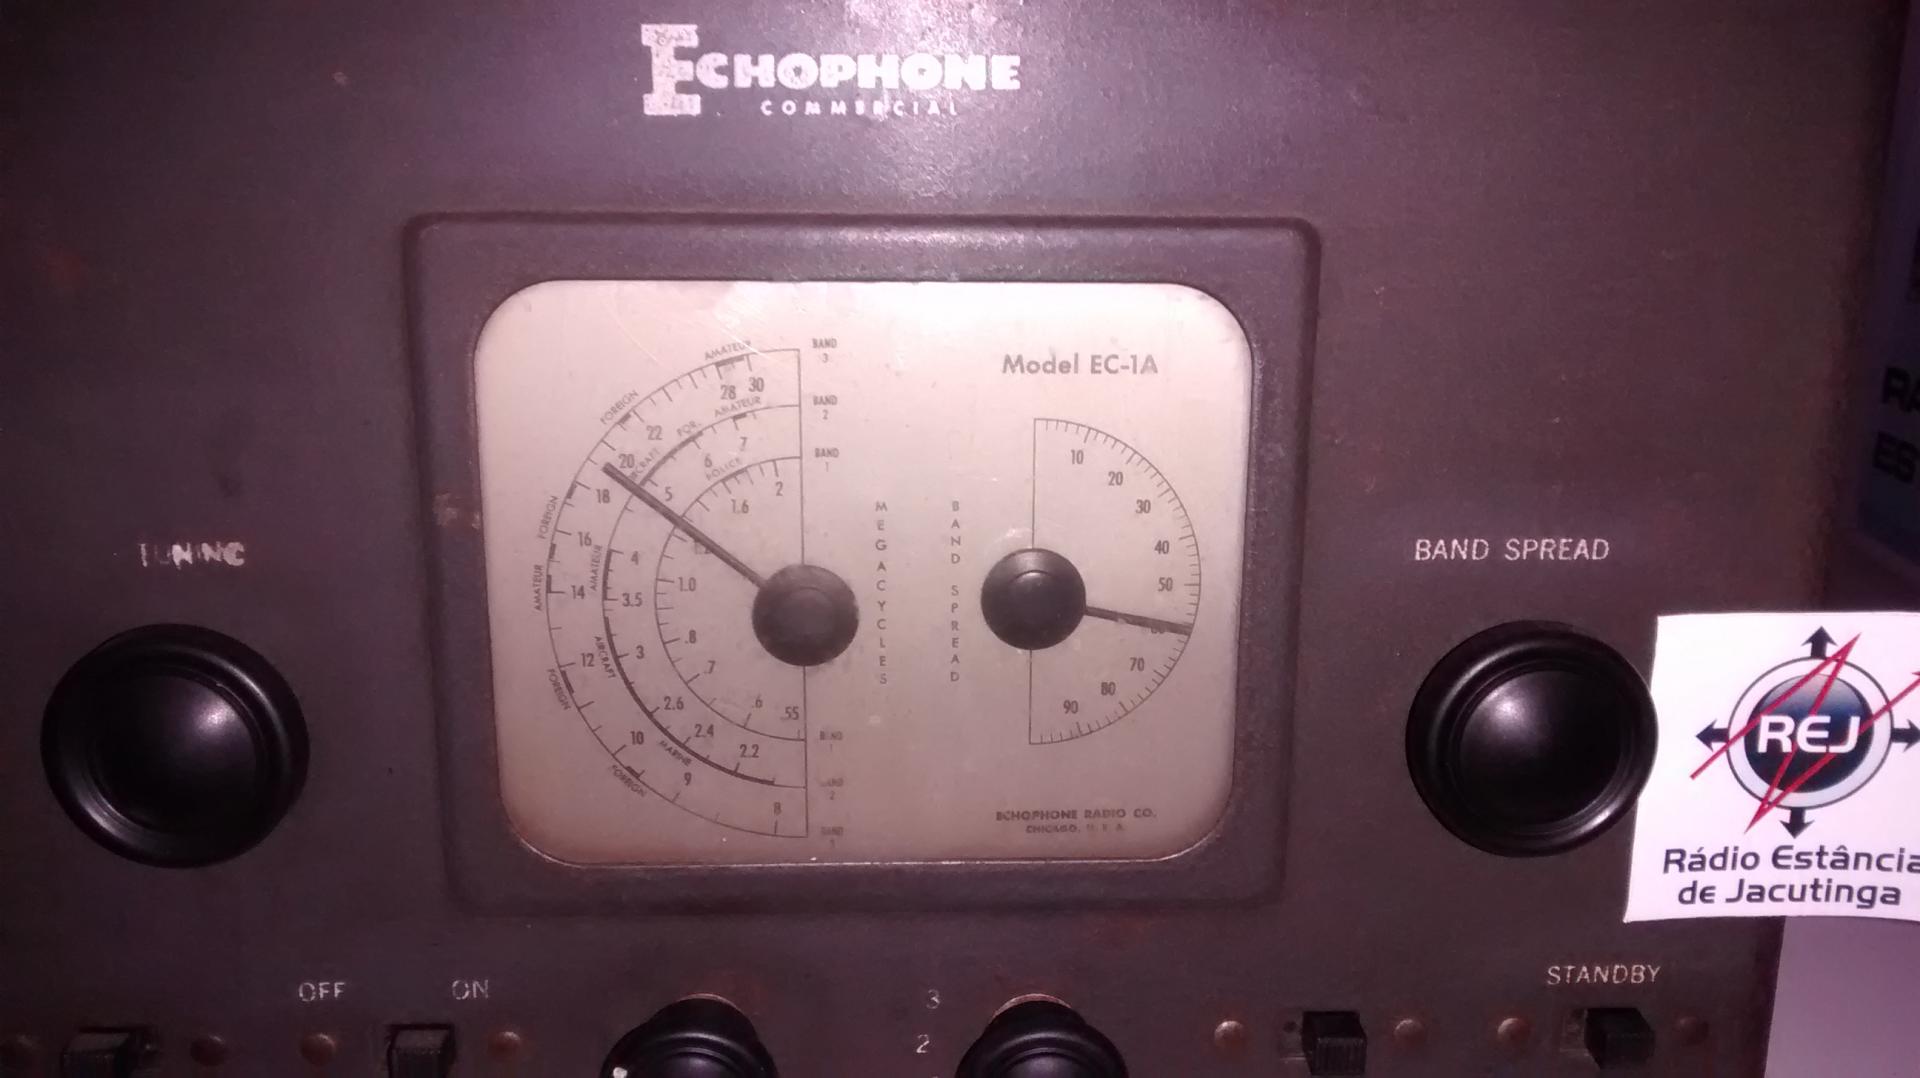 RADIO ECOPHONE